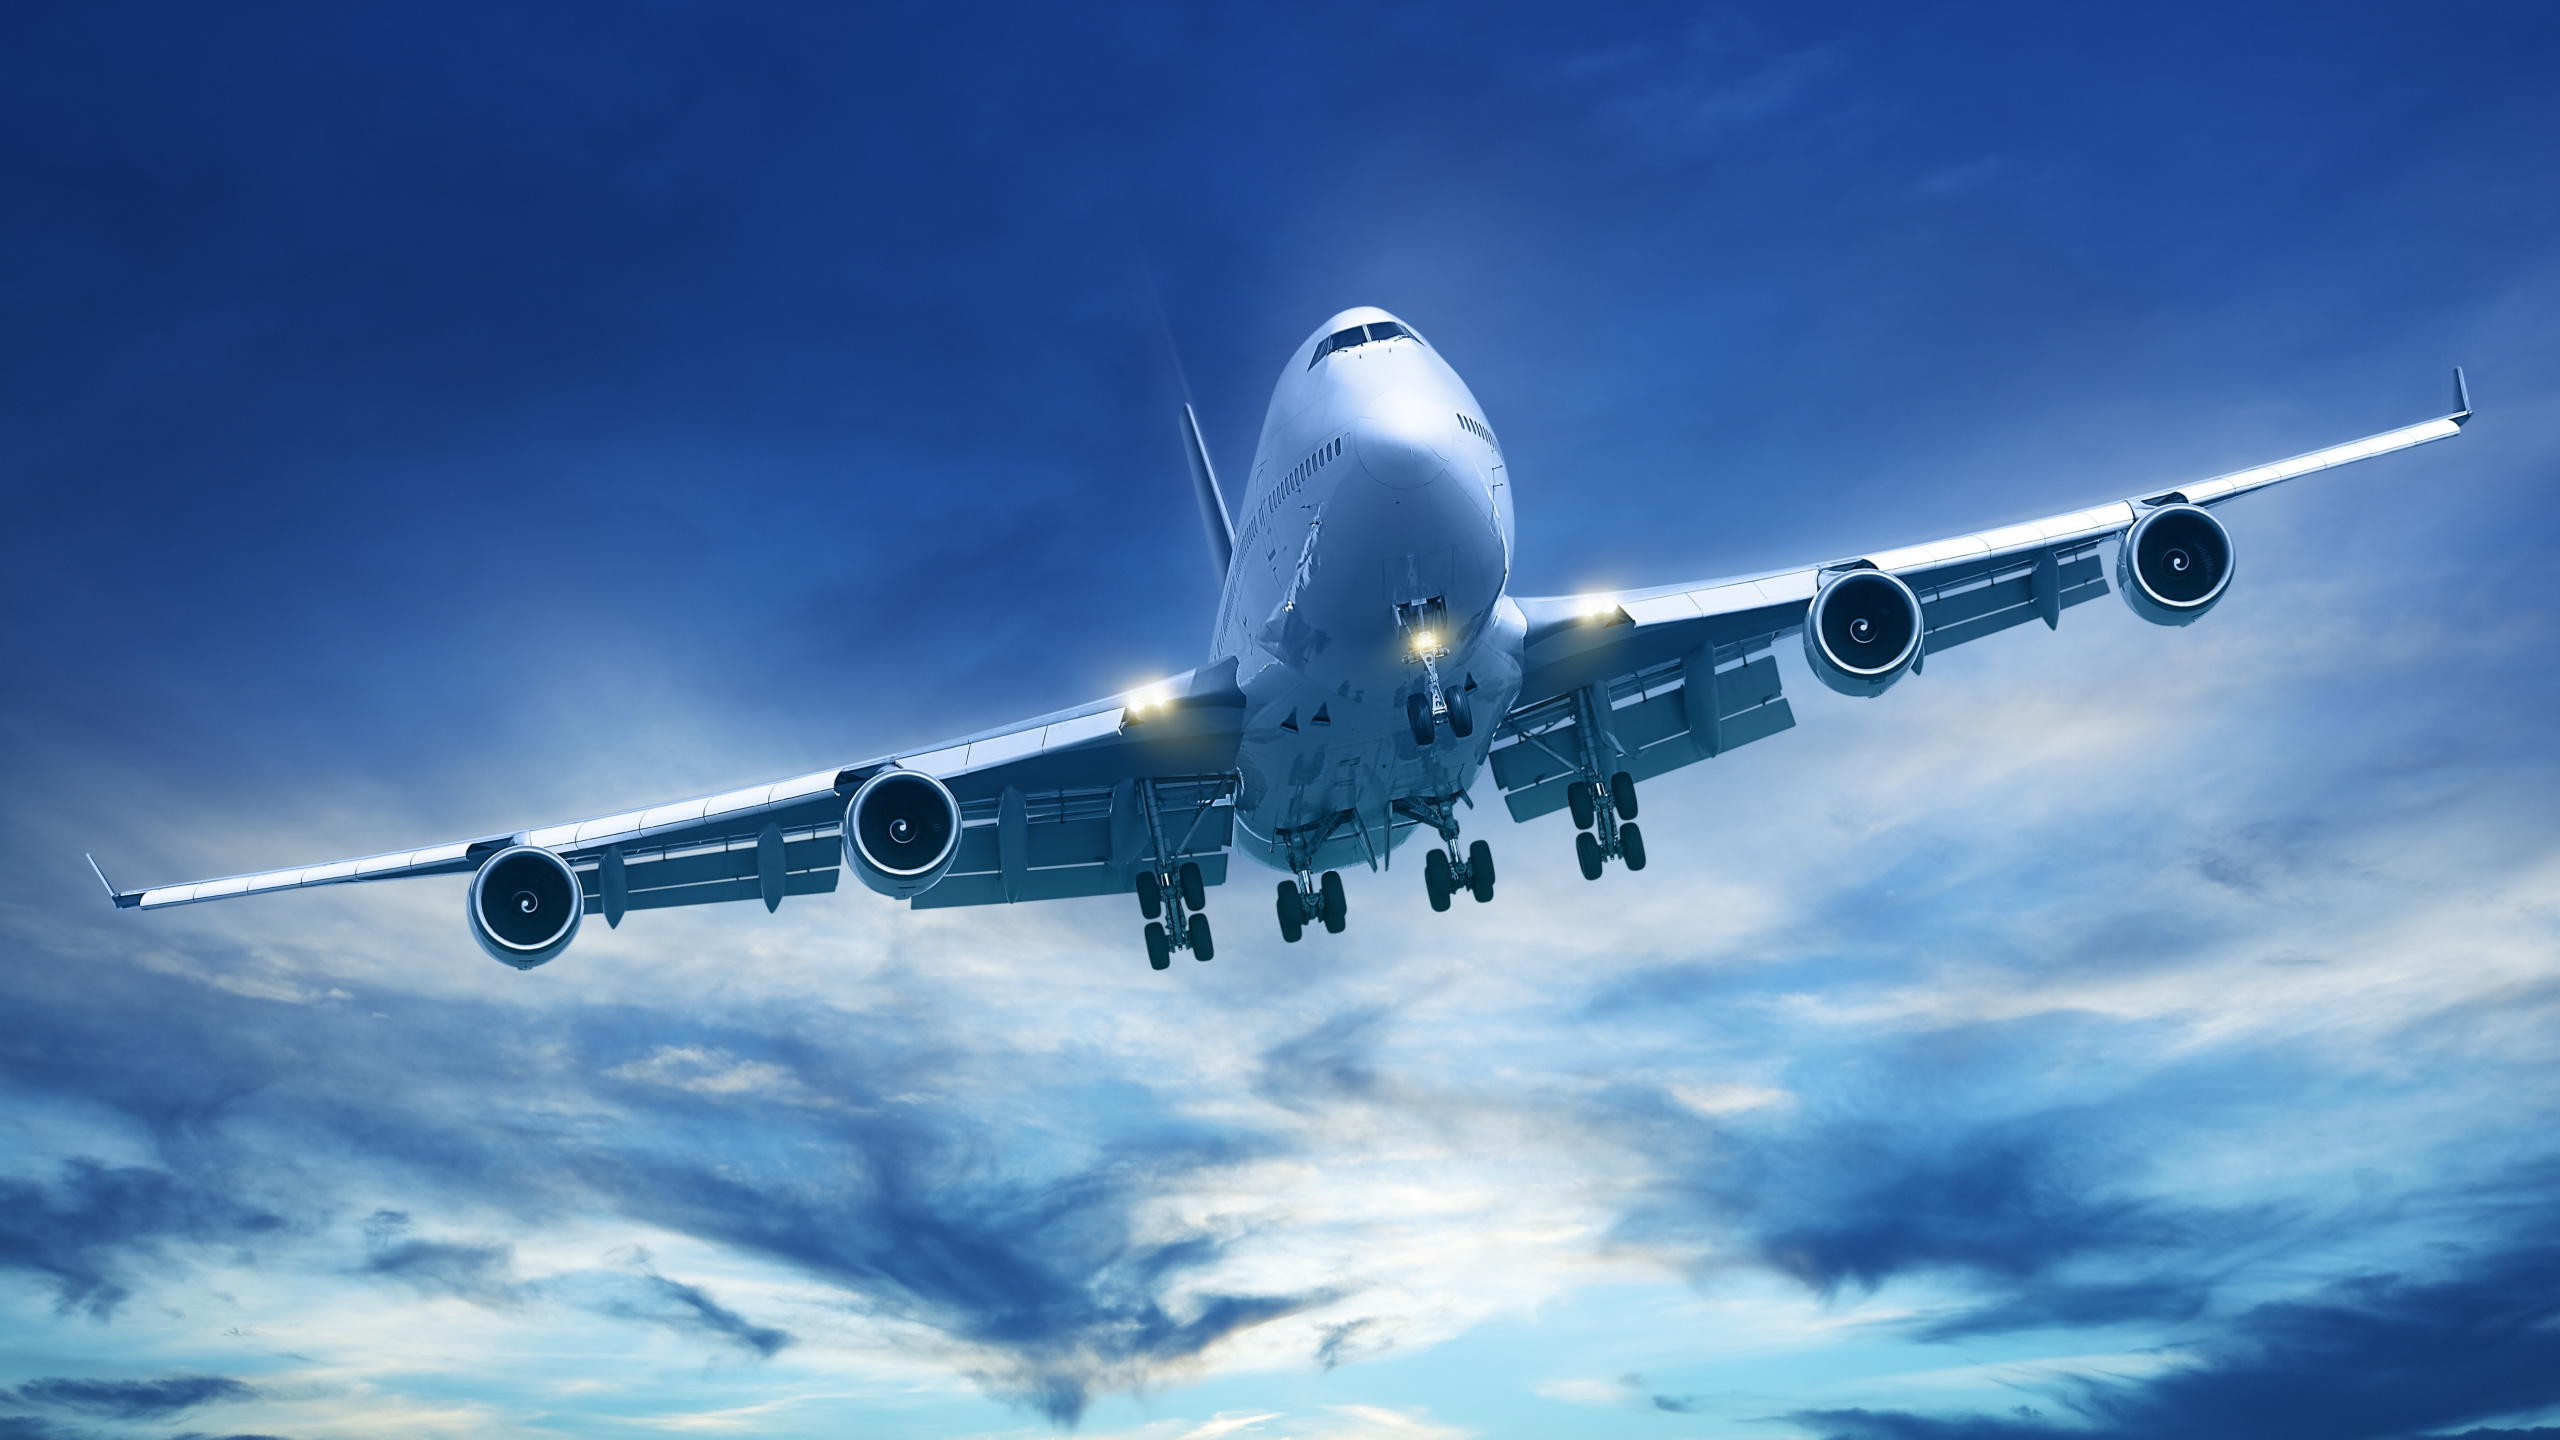 航班, 空中旅行, 客机, 航空, 航空公司 壁纸 2560x1440 允许